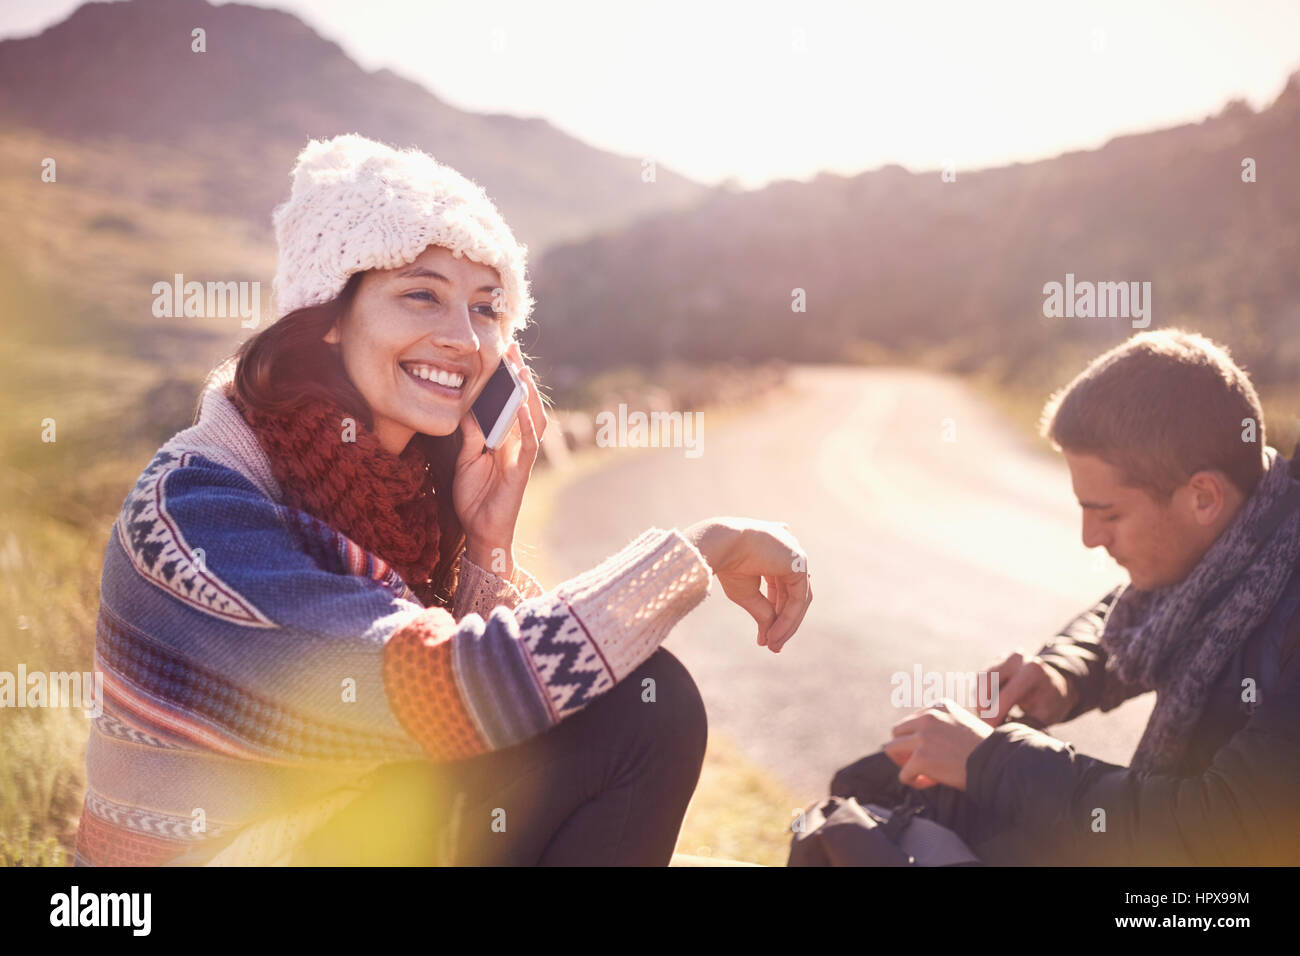 Lächelnde junge Frau am Handy auf sonnigen, abgelegenen Straße Stockfoto